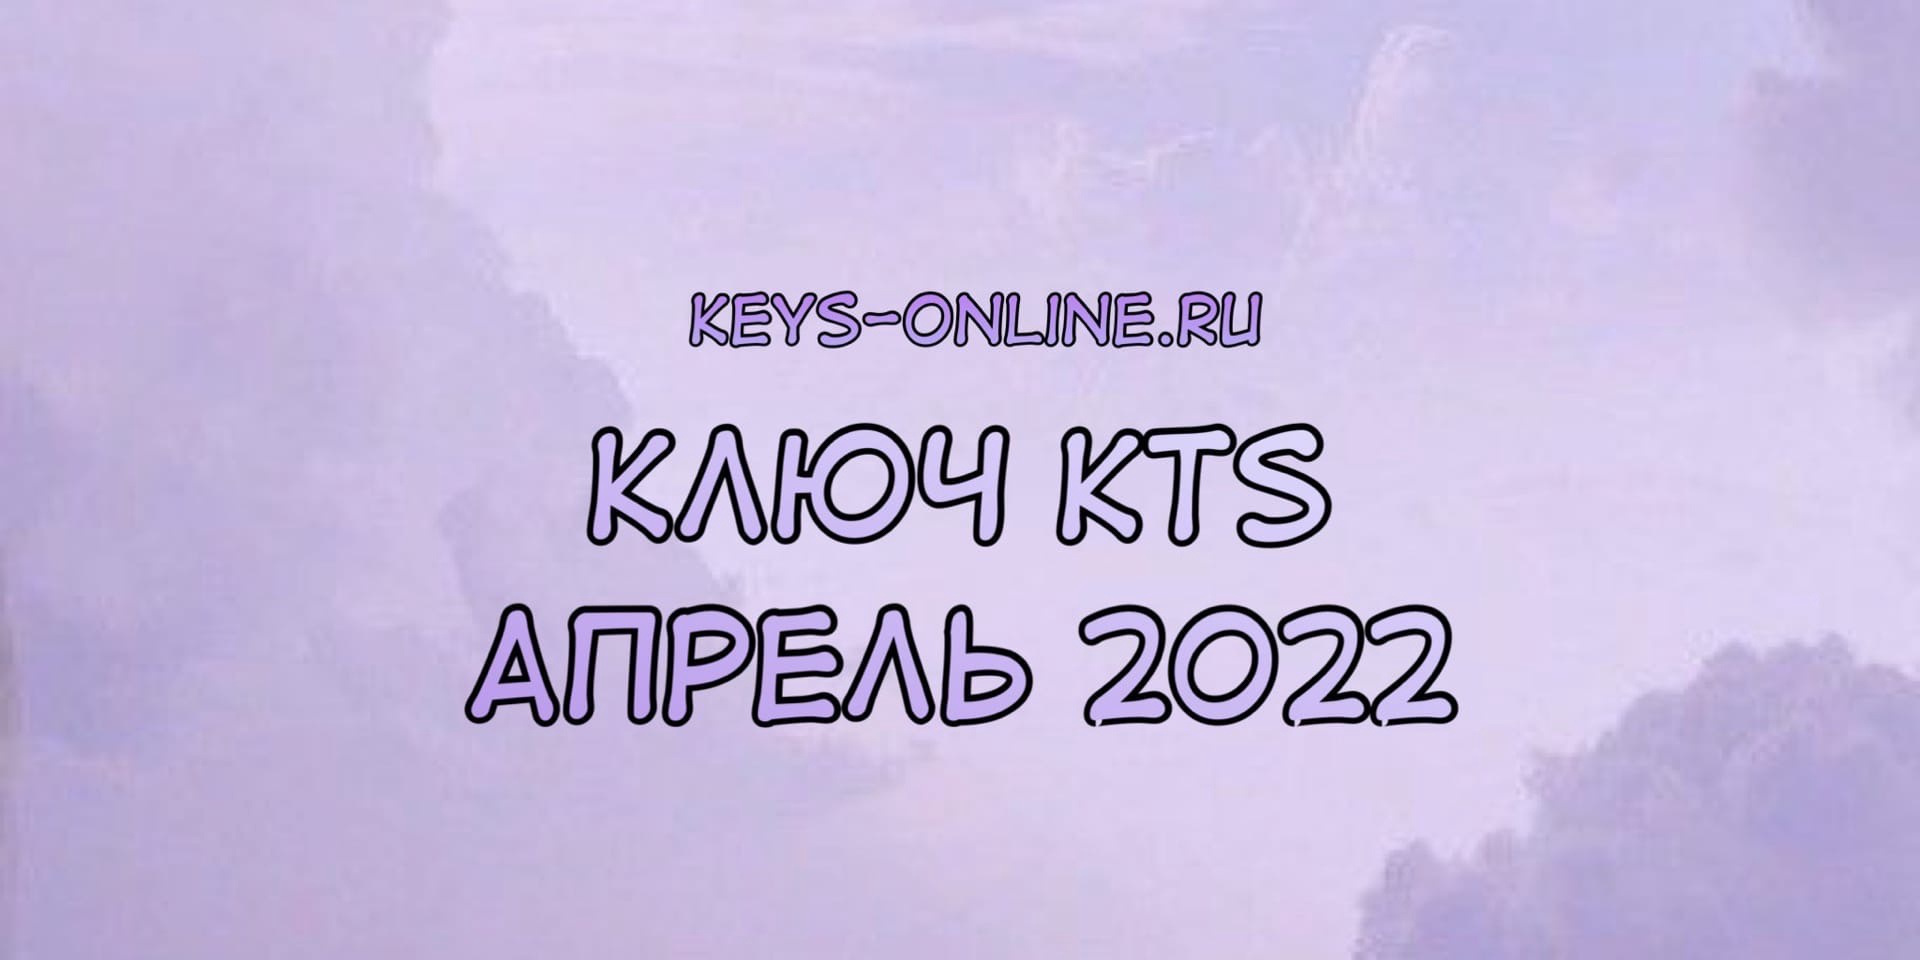 Ключ для KTS апрель 2022